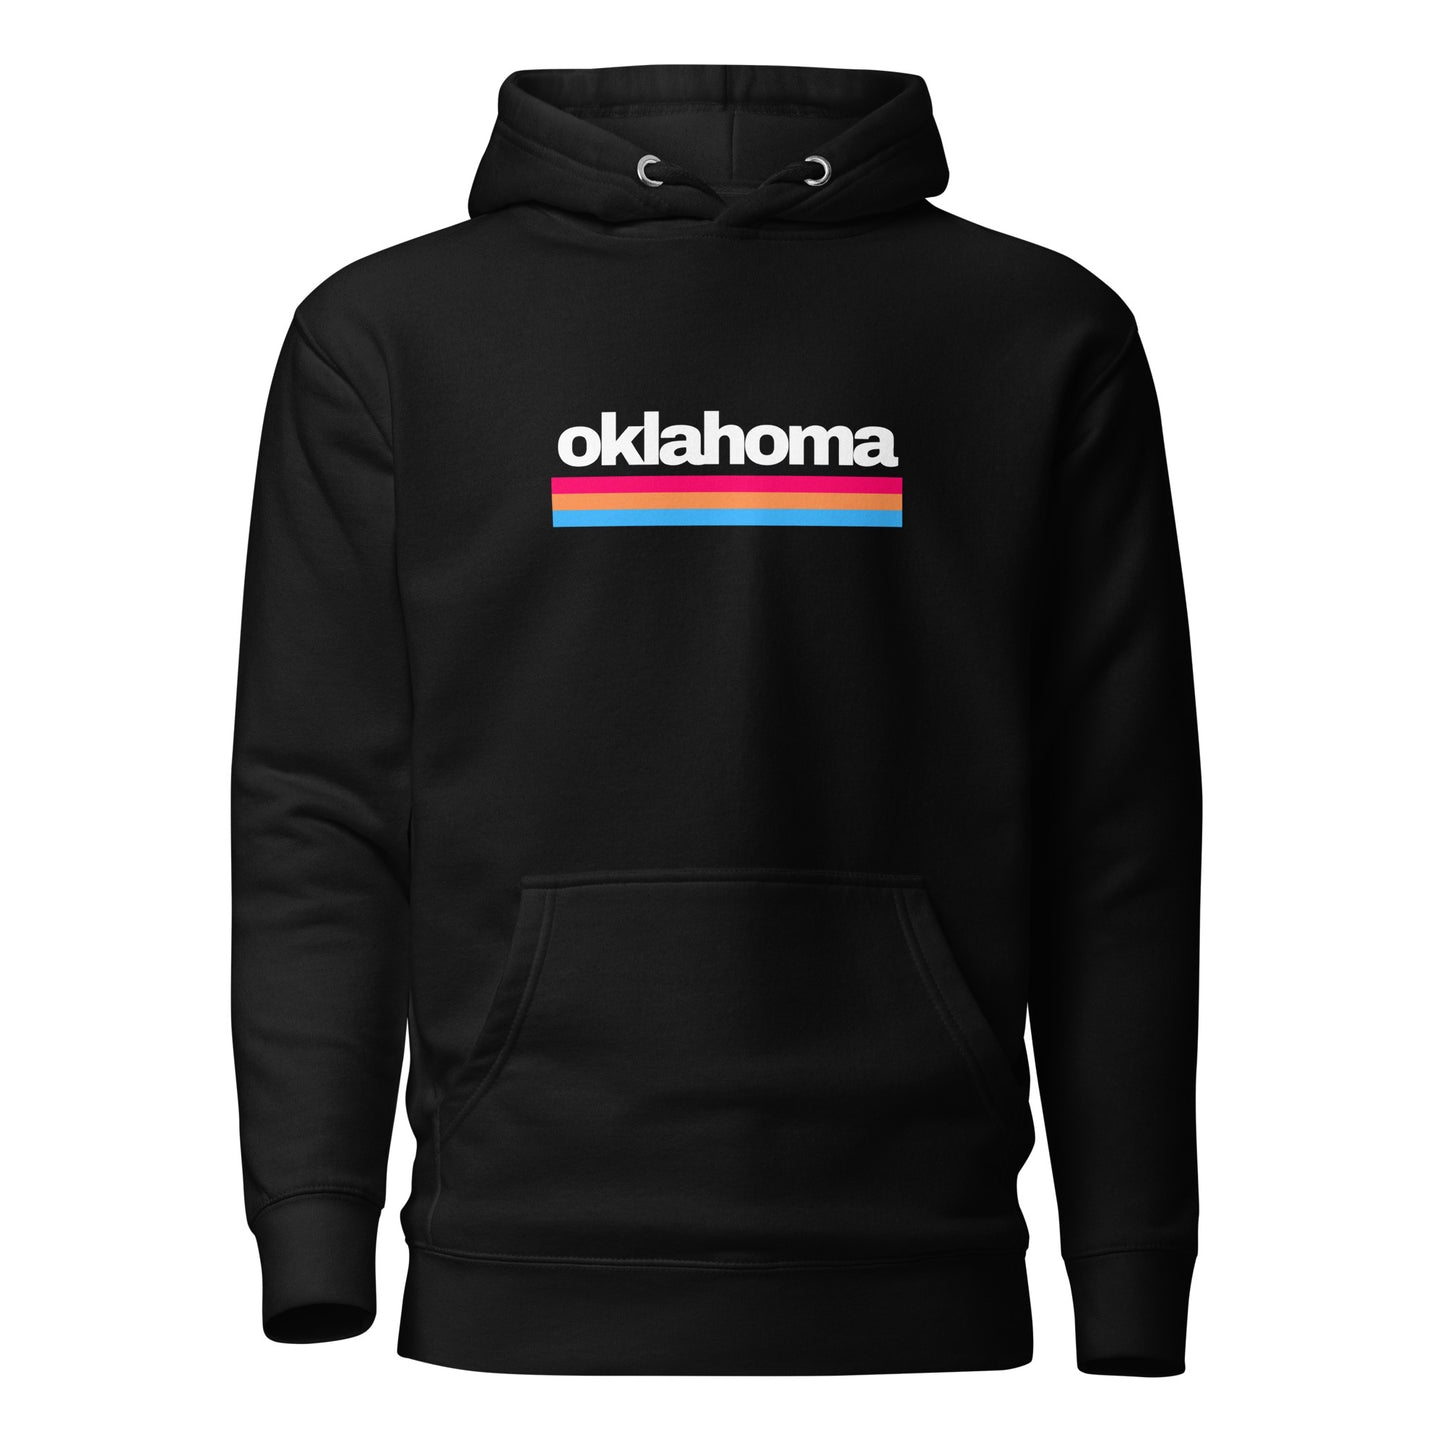 Oklahoma - Unisex Hoodie